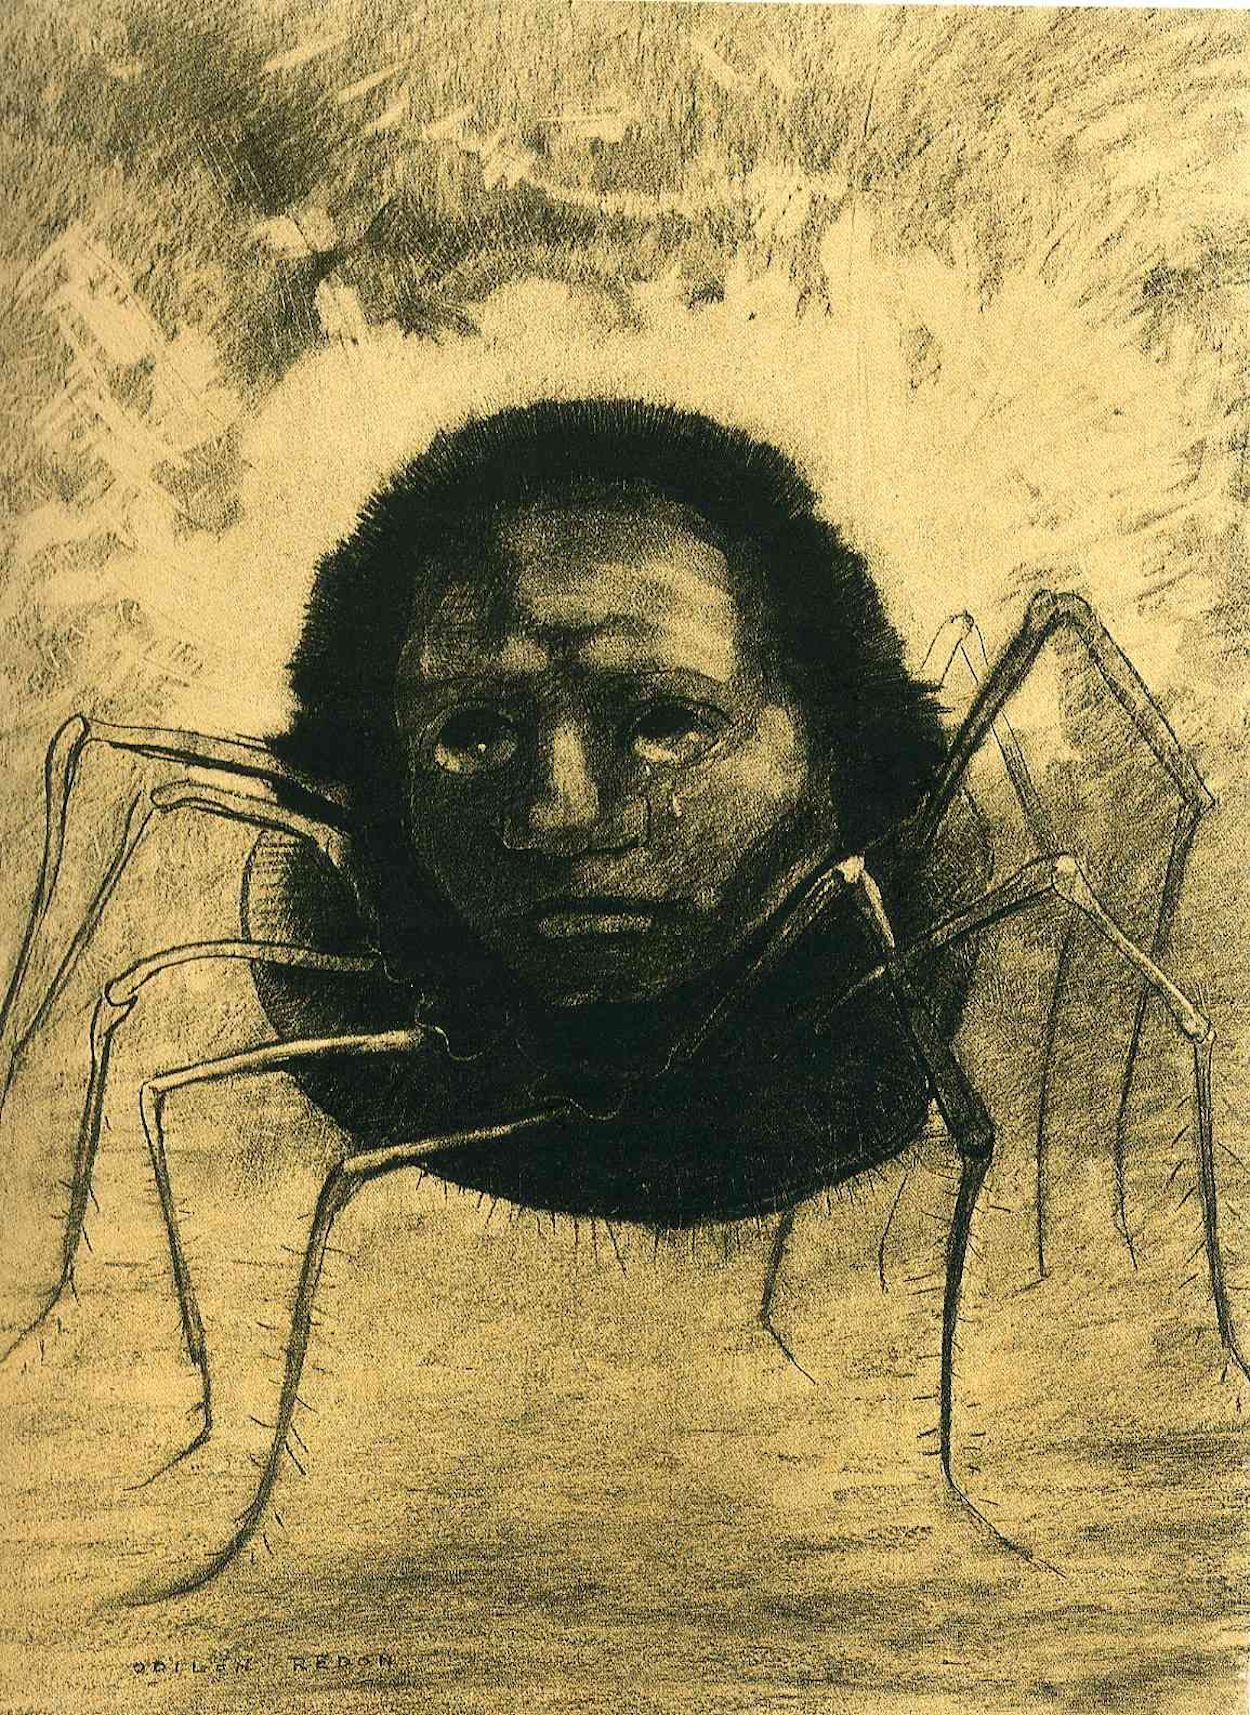 Il ragno che piange by Odilon Redon - 1881 - 49 x 32.5 cm collezione privata